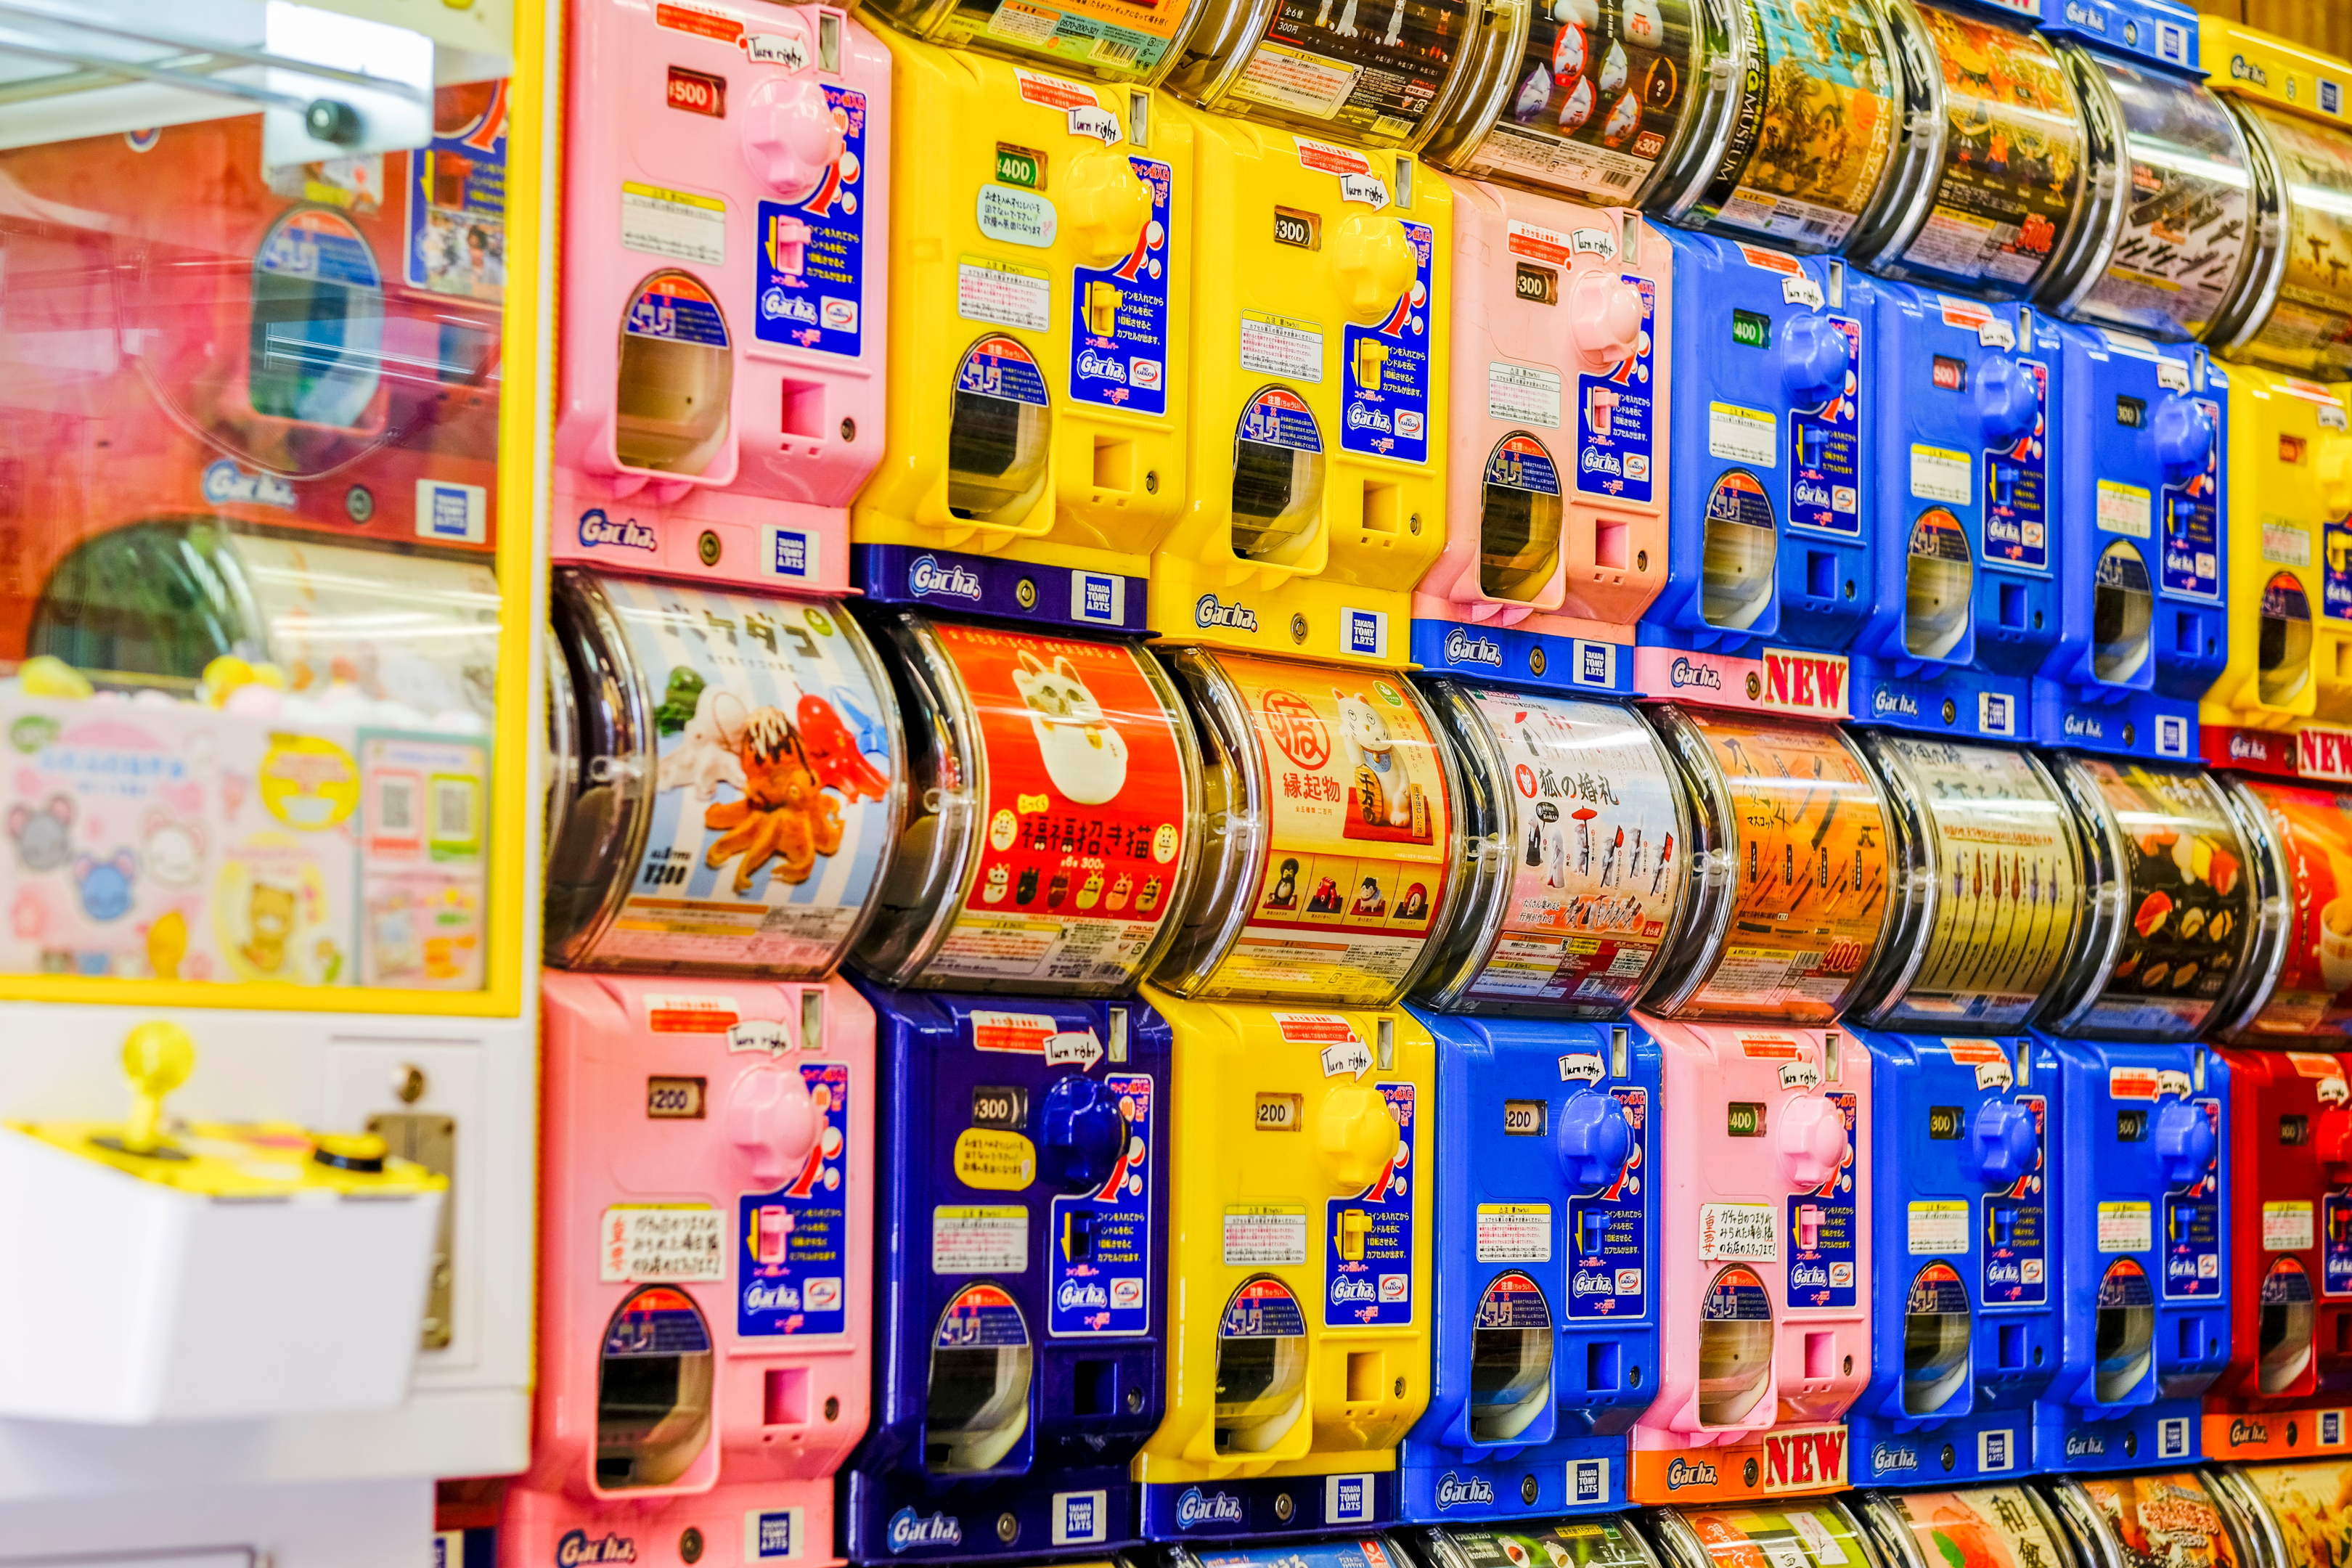 Rows of capsule toys (gachapon) in Japan